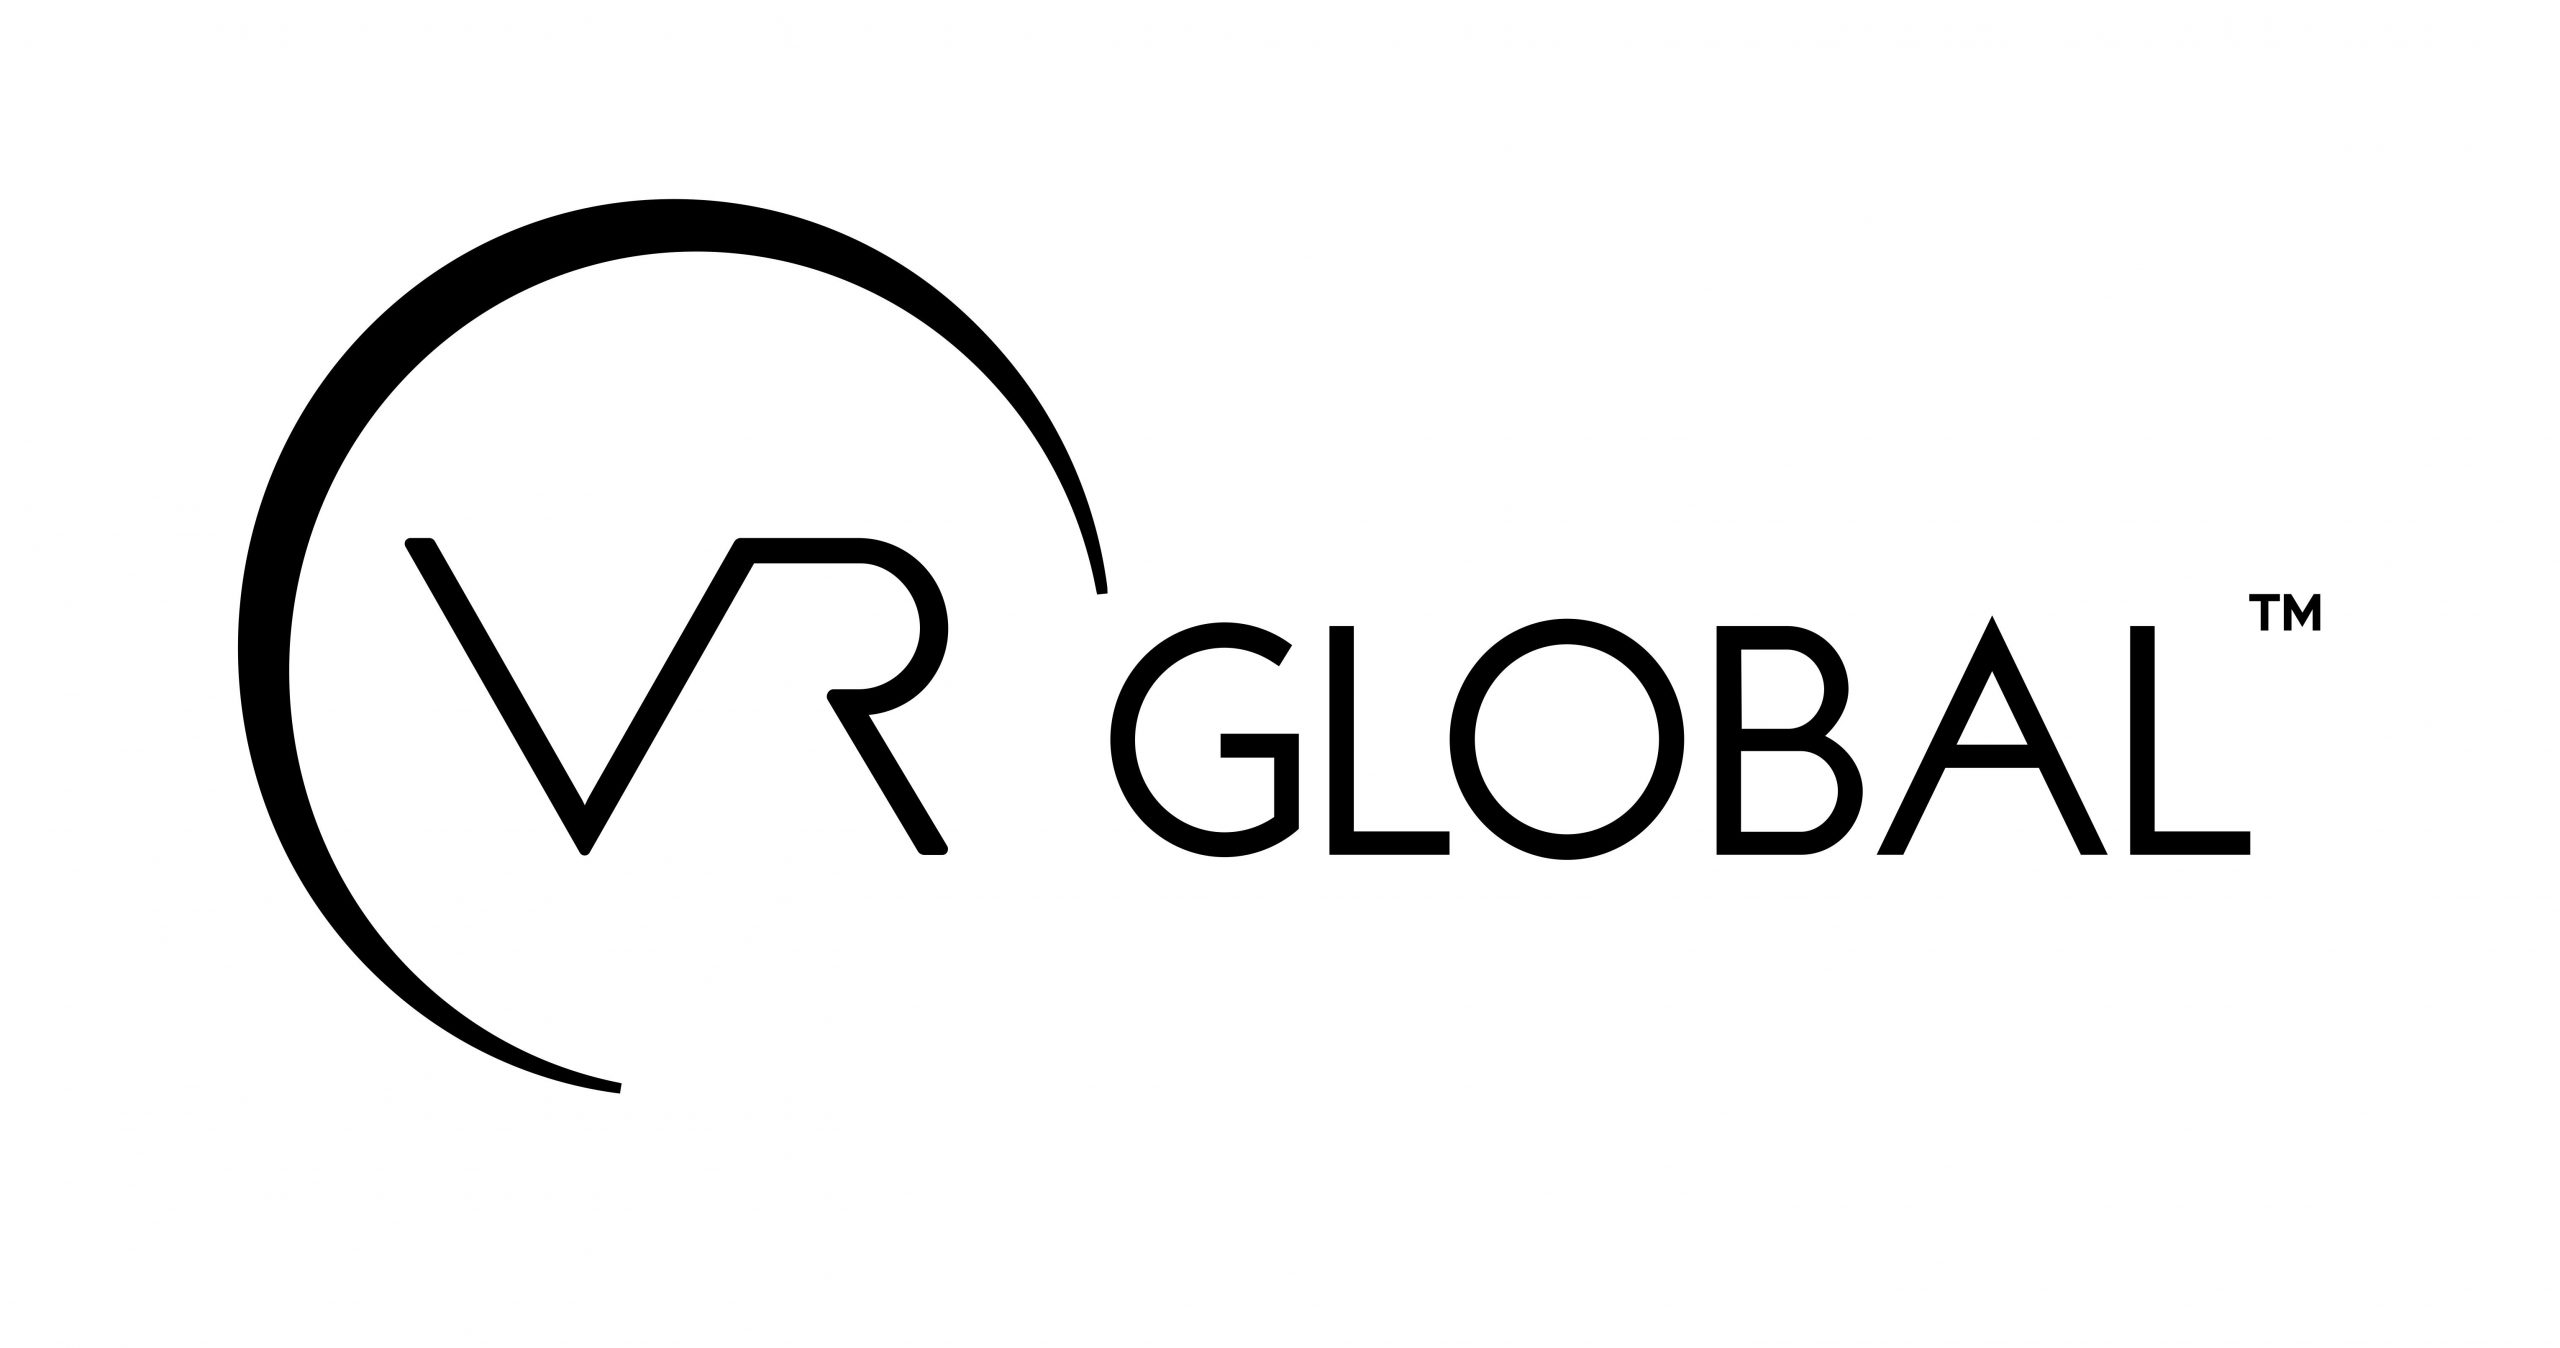 VR Global